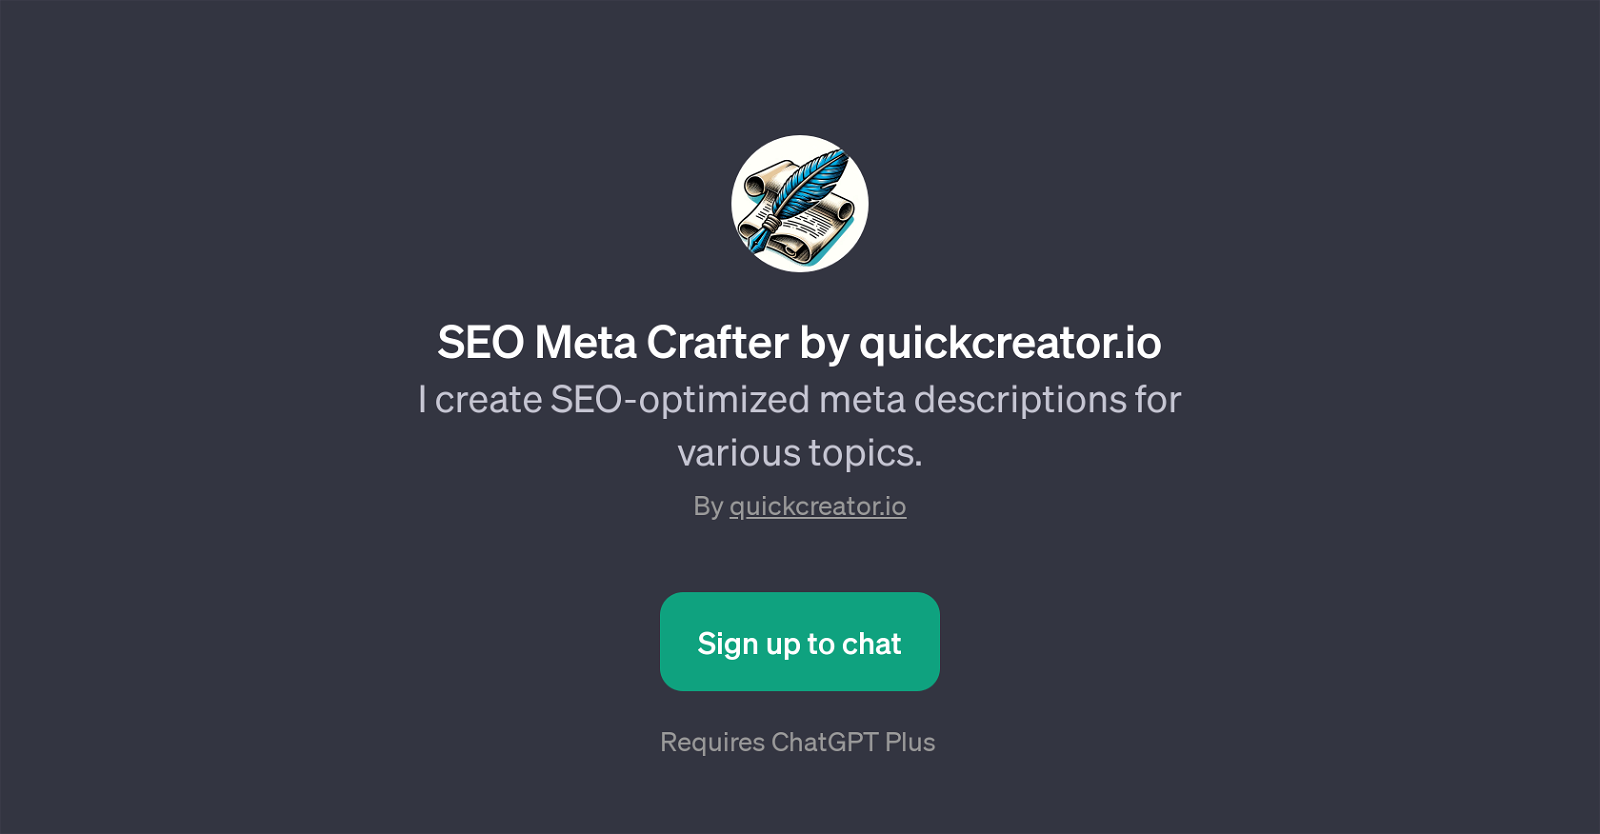 SEO Meta Crafter by quickcreator.io website